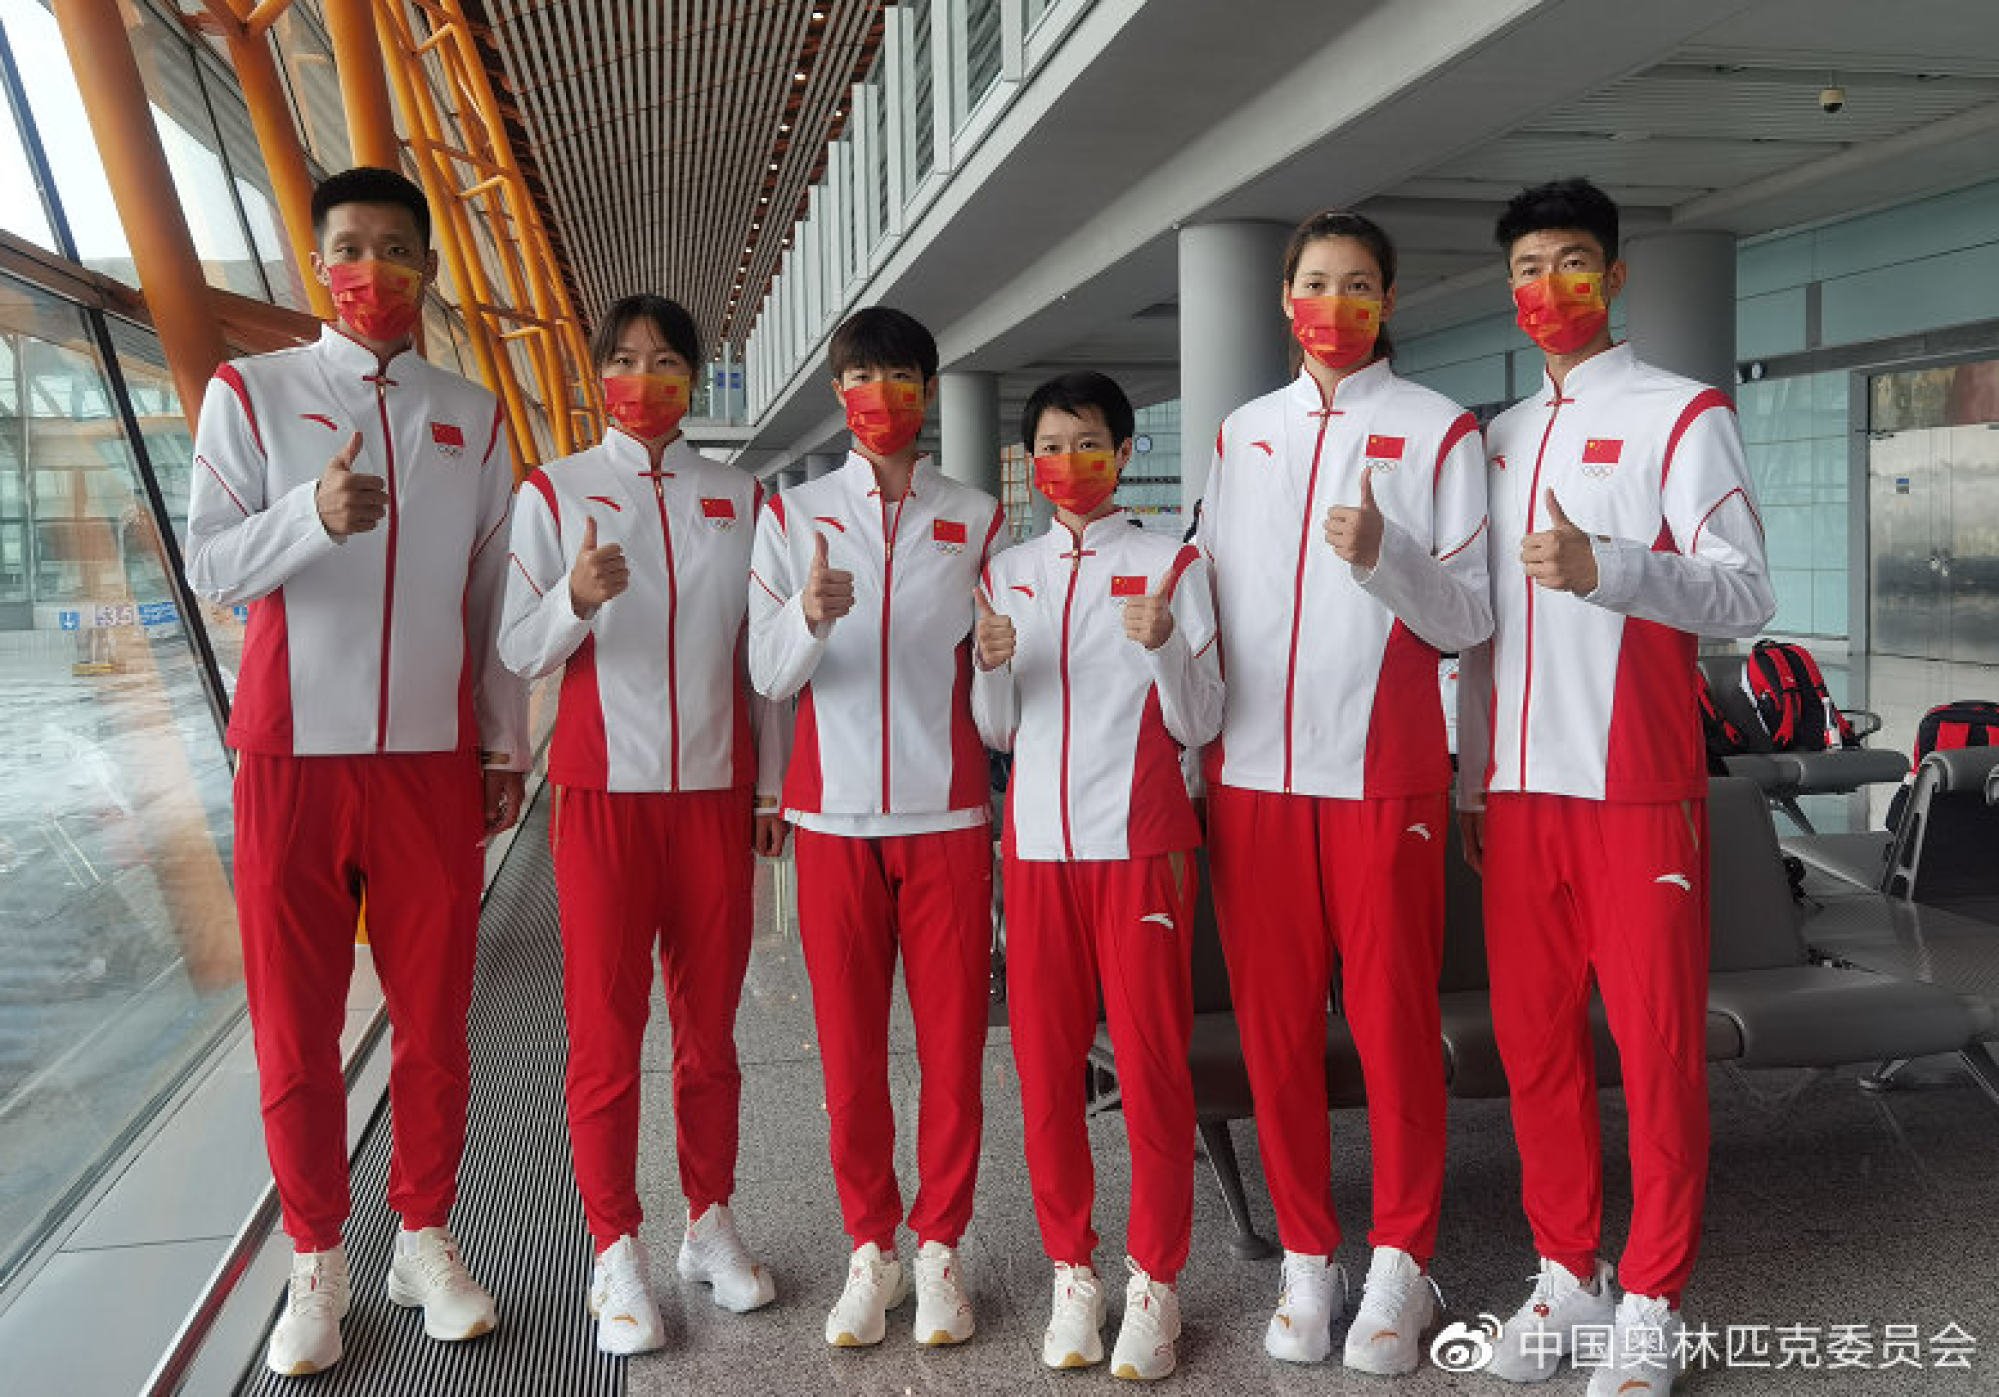 Trung Quốc: Ye Jintian đảm nhận khâu thiết kế trang phục cho đội Olympic Trung Quốc. Với hai tông màu đỏ và trắng chủ đạo được tô điểm với lá cờ Trung Quốc và biểu tượng của hãng đồ thể thao khổng lồ Anta, nhà sản xuất trang phục, Ye Jintian sẽ trình làng bộ quần áo “rồng vô địch” kết hợp với chất liệu vải cao cấp cho các vận động viên.